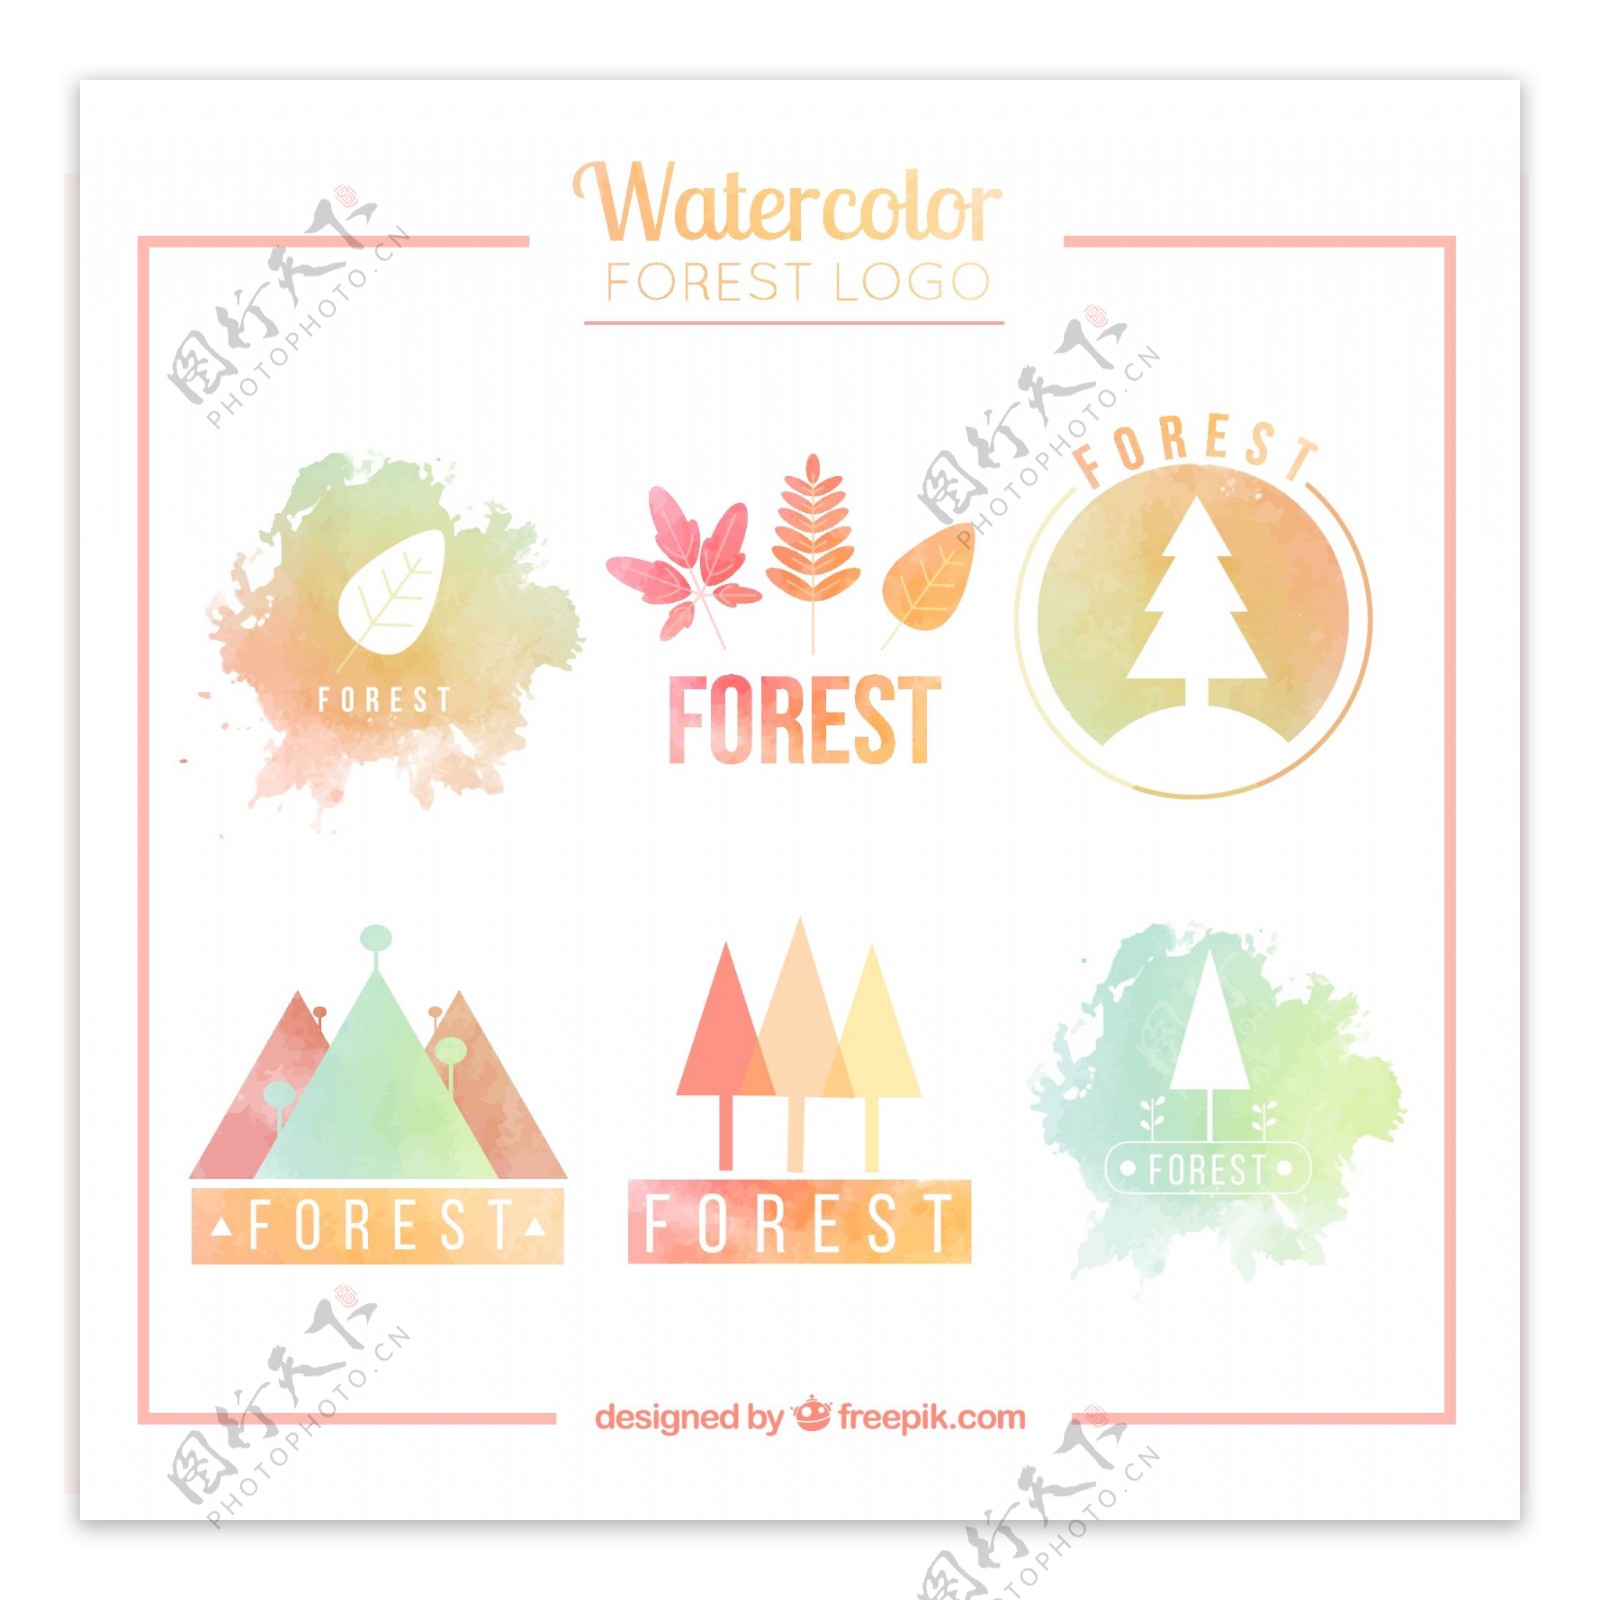 6款水彩绘森林标志矢量素材